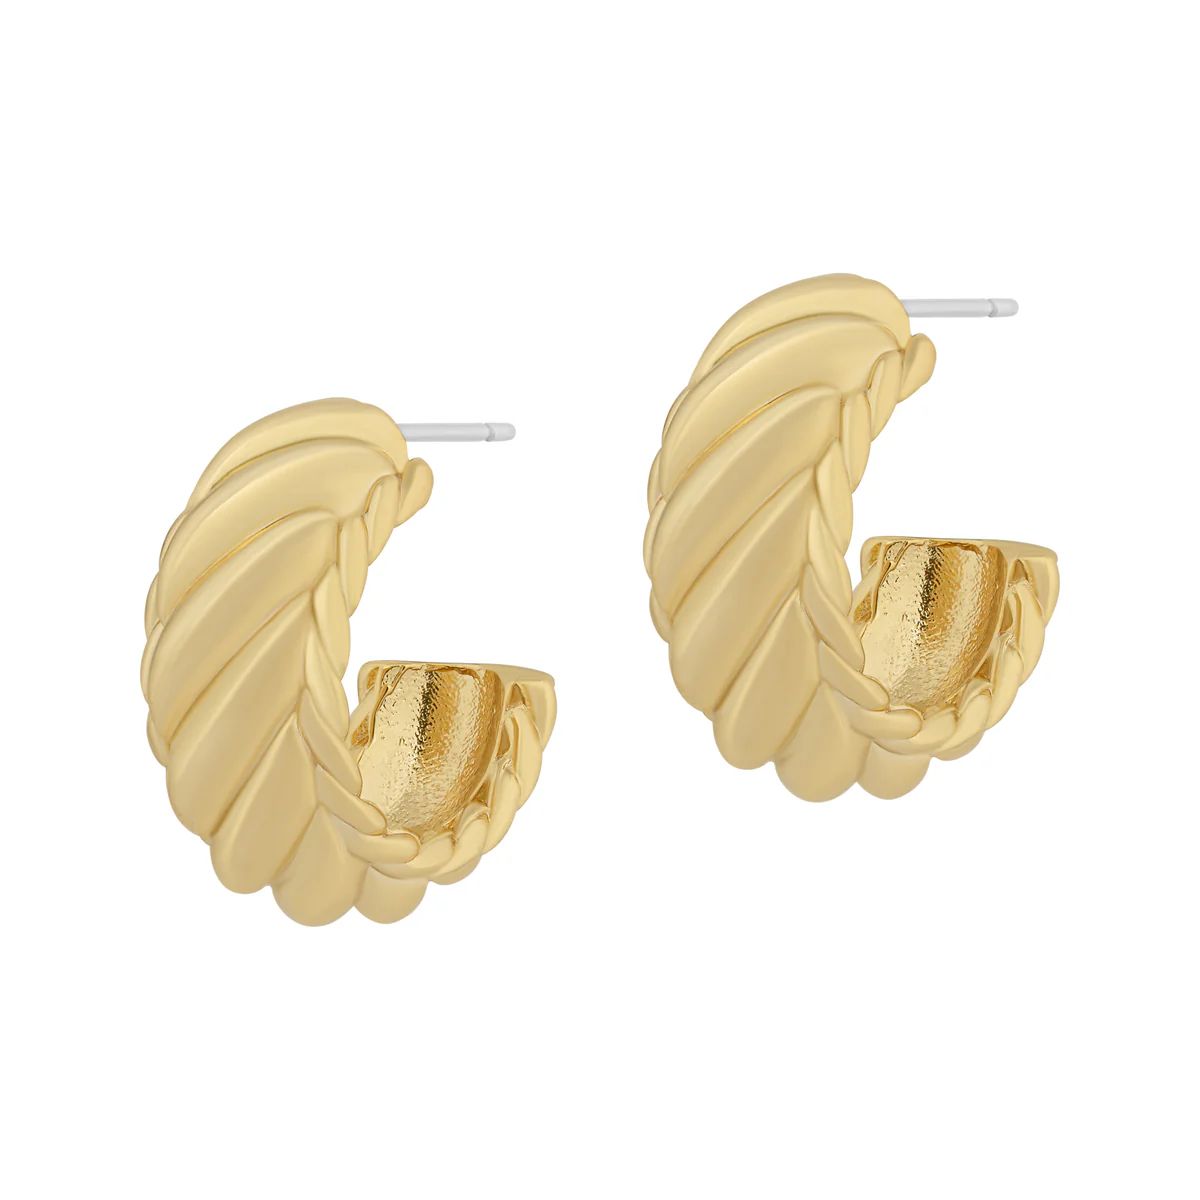 Aspen Earrings | Electric Picks Jewelry